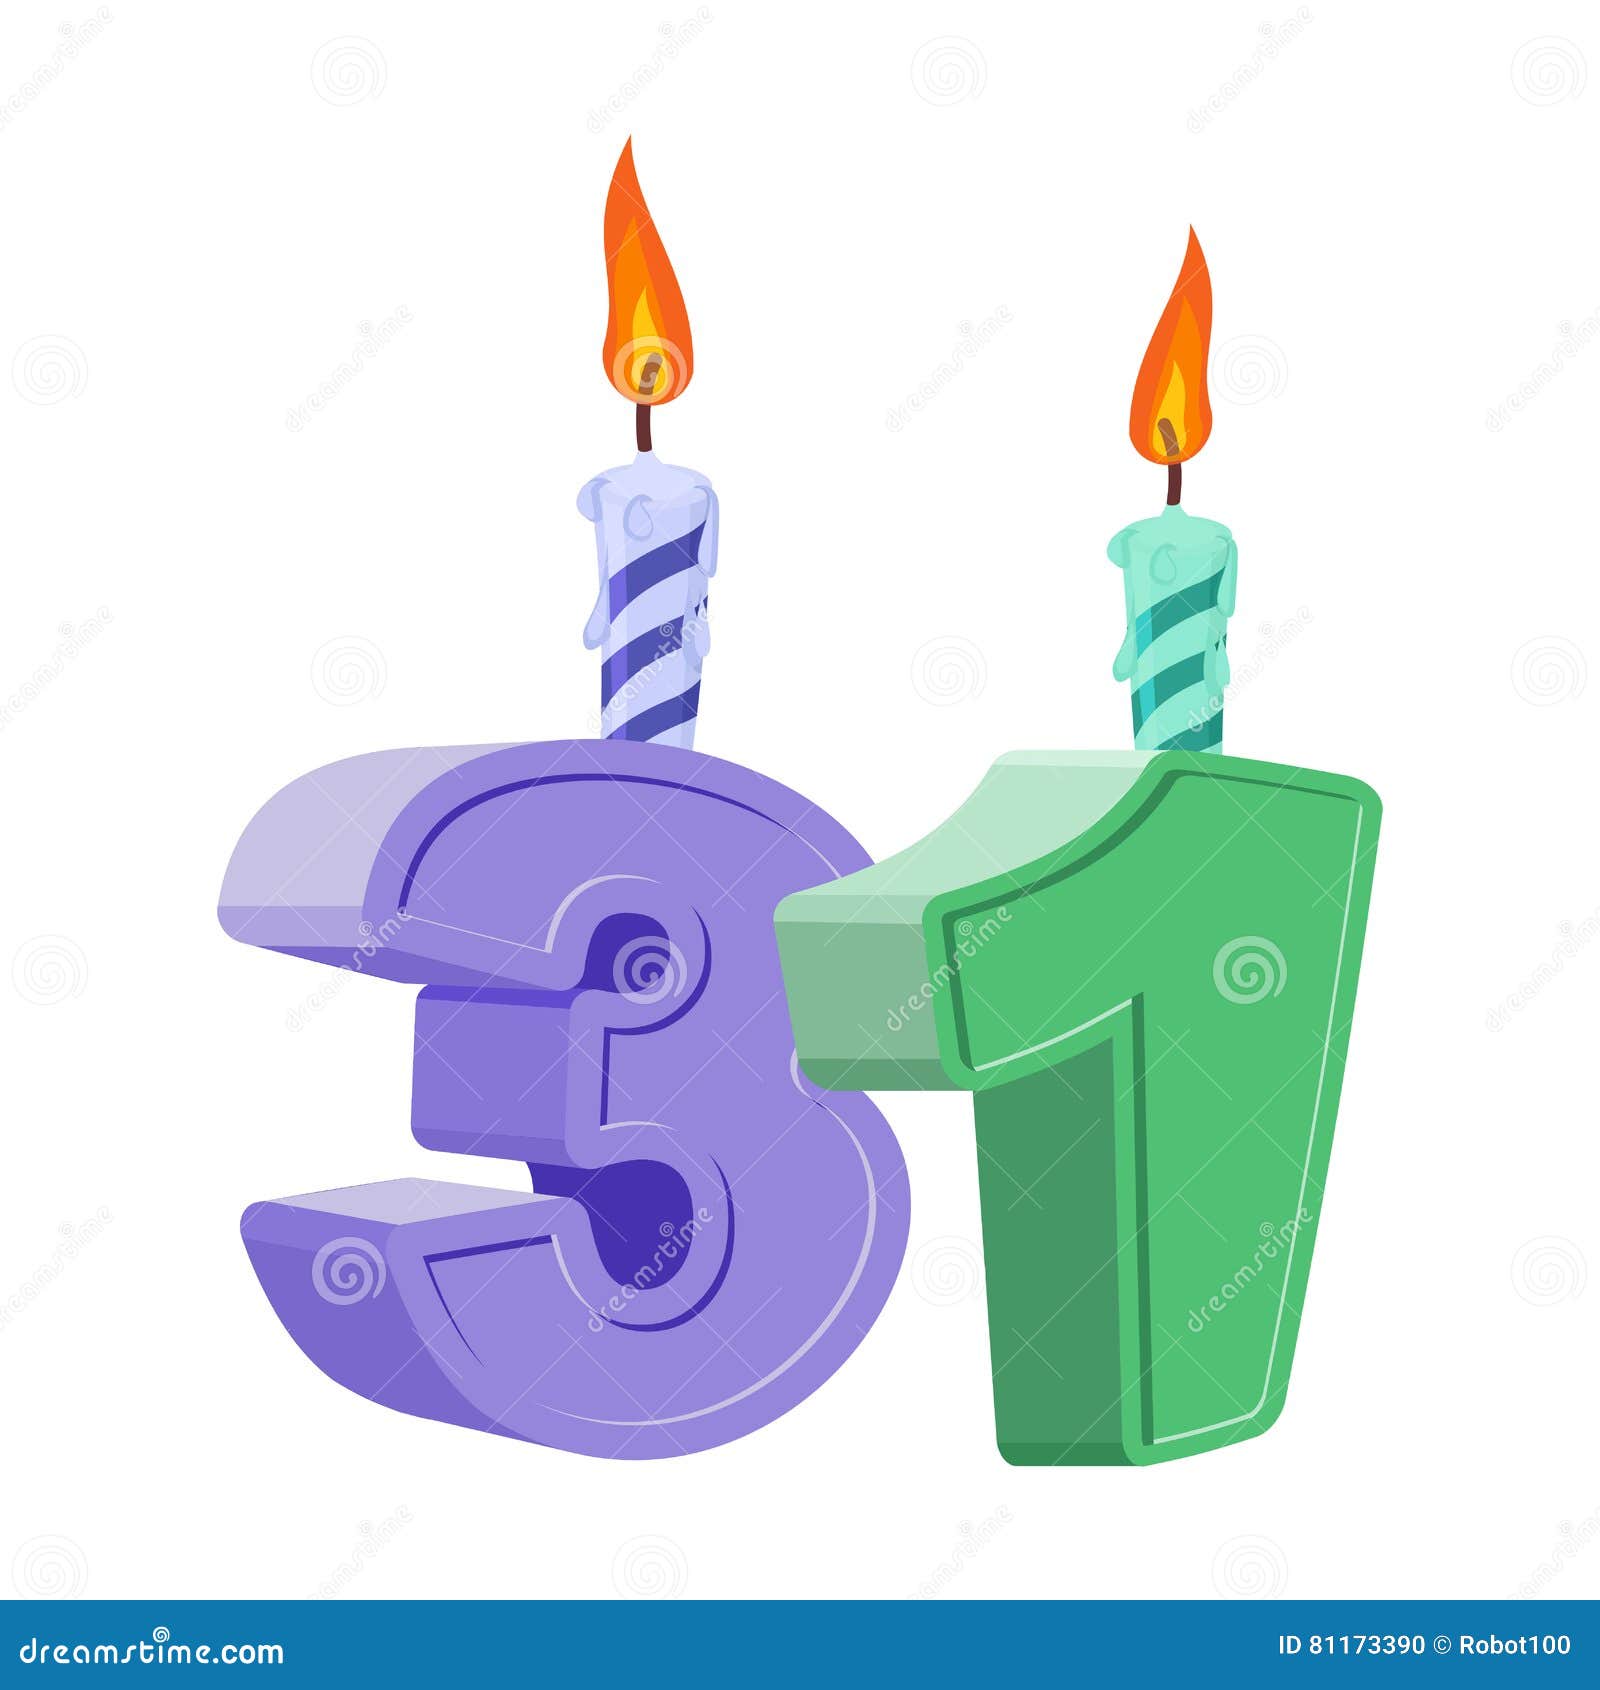 Cumpleaños De 1 Año Figuras Con La Vela Festiva Para La Torta Del Día De  Fiesta O Ilustración del Vector - Ilustración de vacaciones, cuatro:  81152526